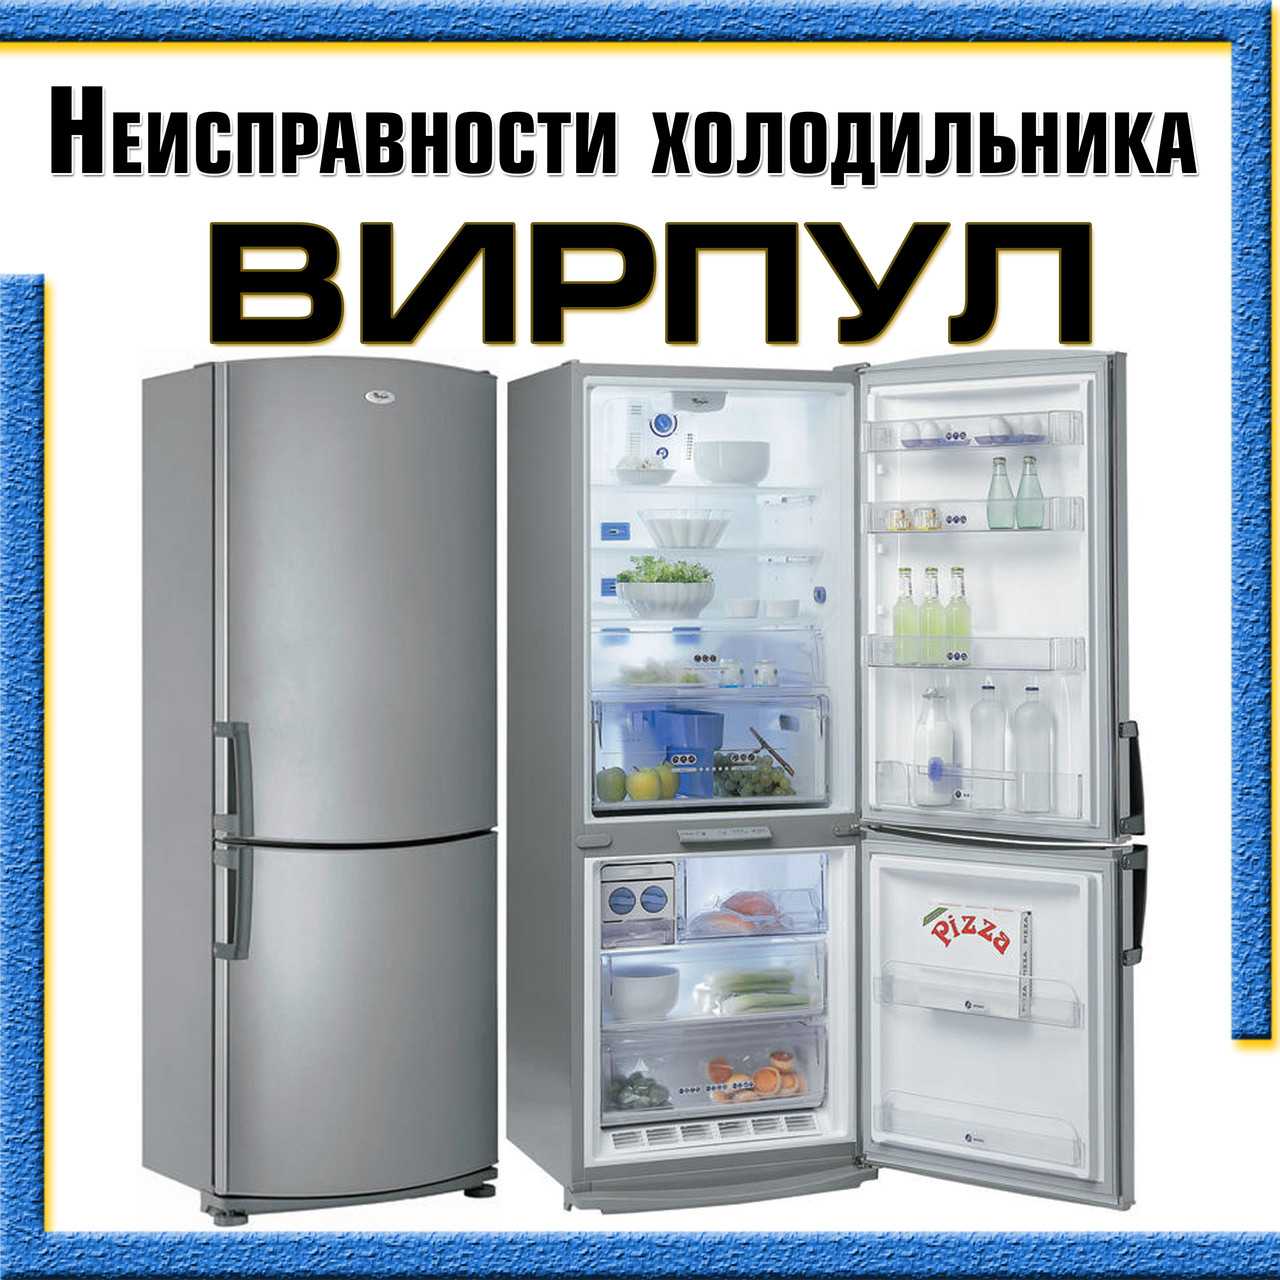 Коды ошибок холодильников и расшифровка | холод групп